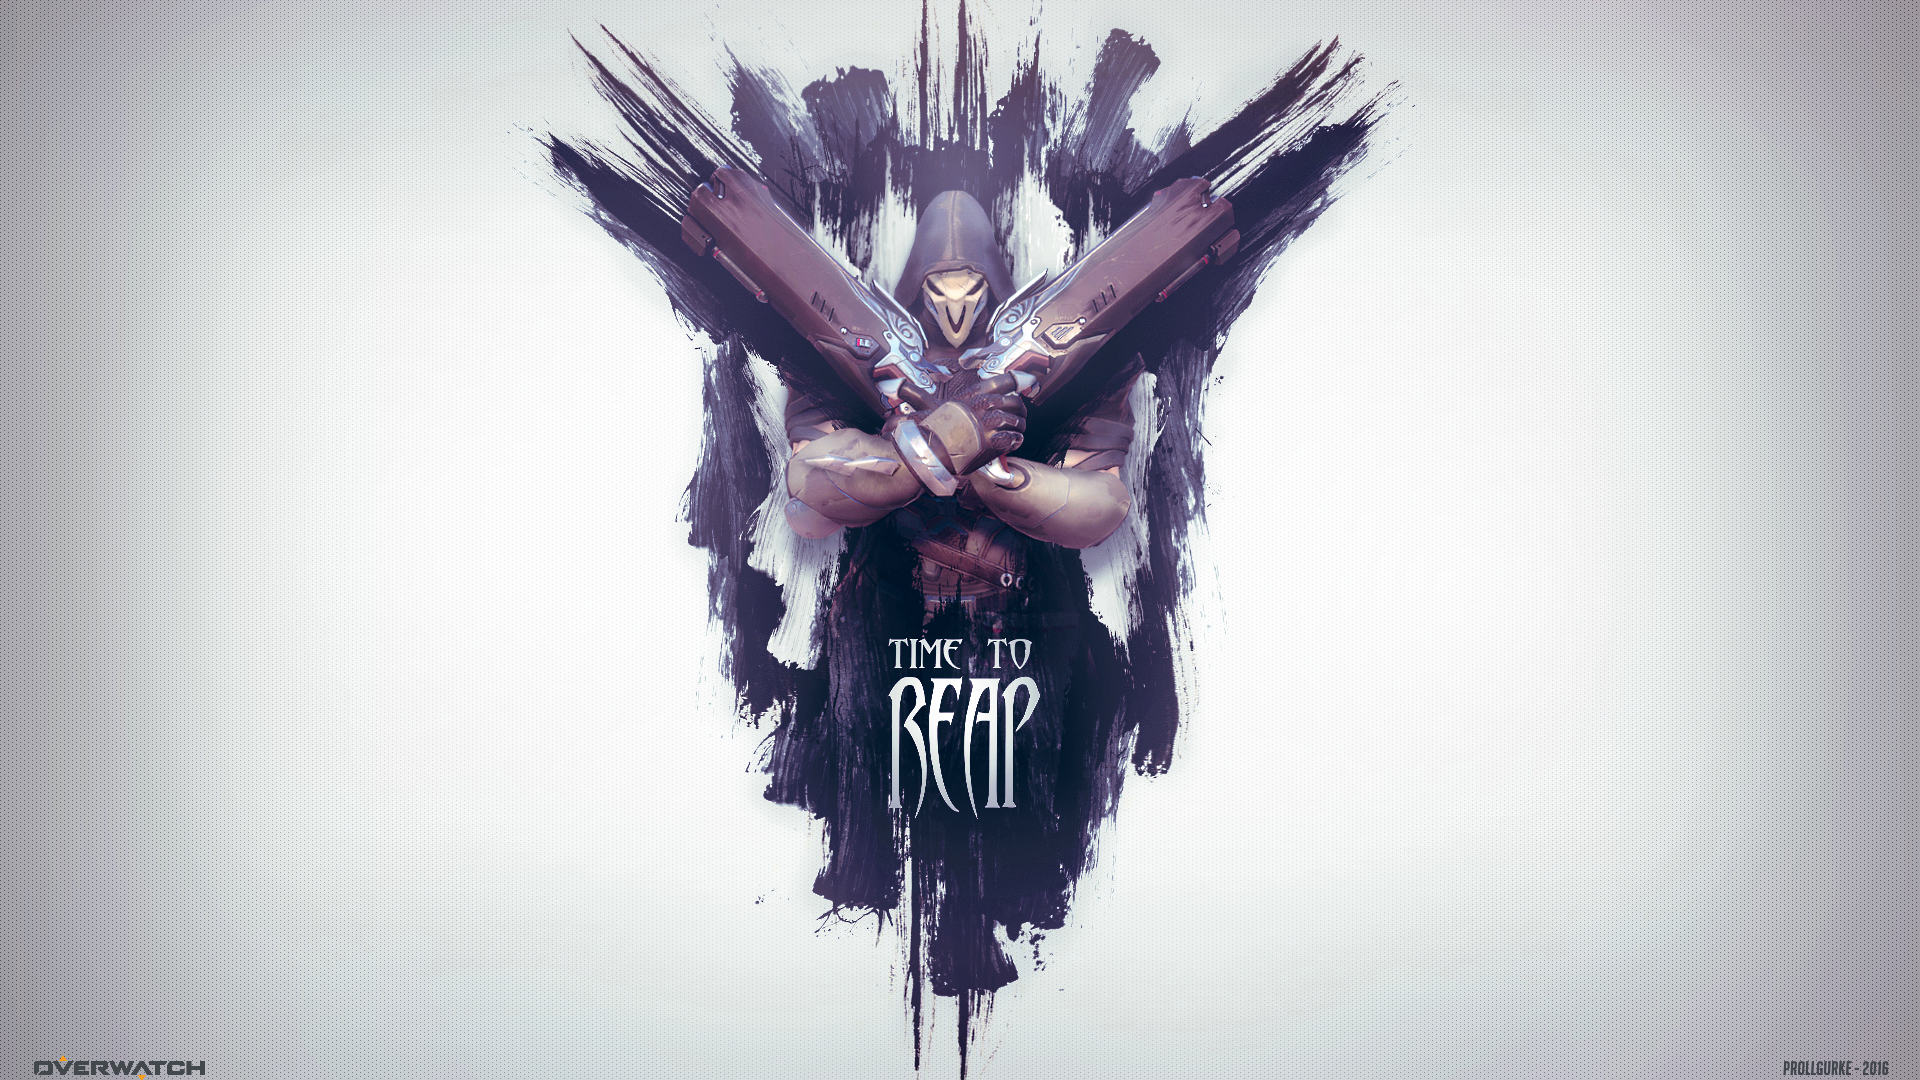 Reaper Wallpaper Overwatch By Prollgurke Watch Fan Art Games